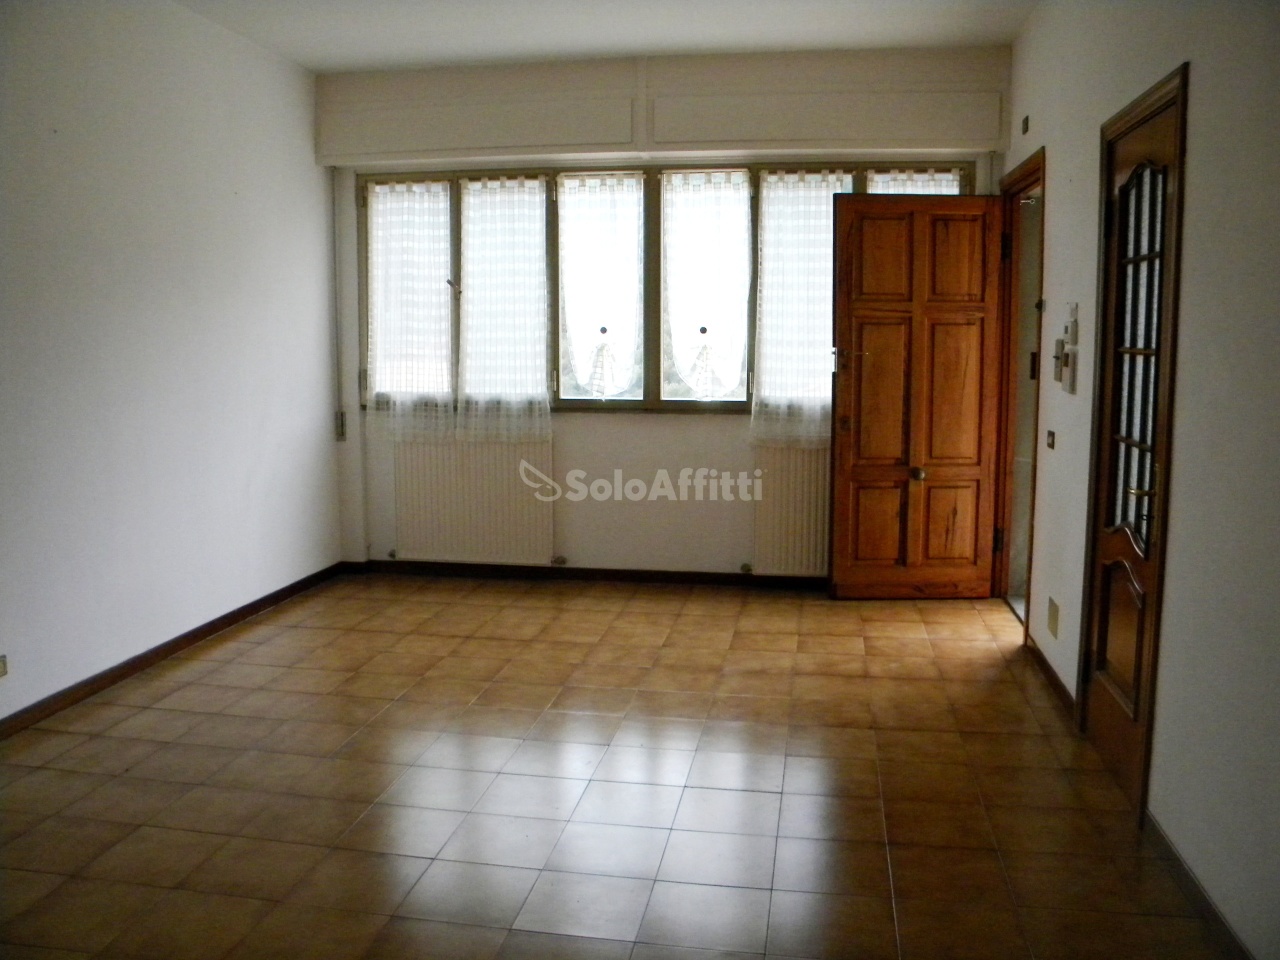 Appartamento in affitto a Chiavari, 5 locali, prezzo € 820 | PortaleAgenzieImmobiliari.it